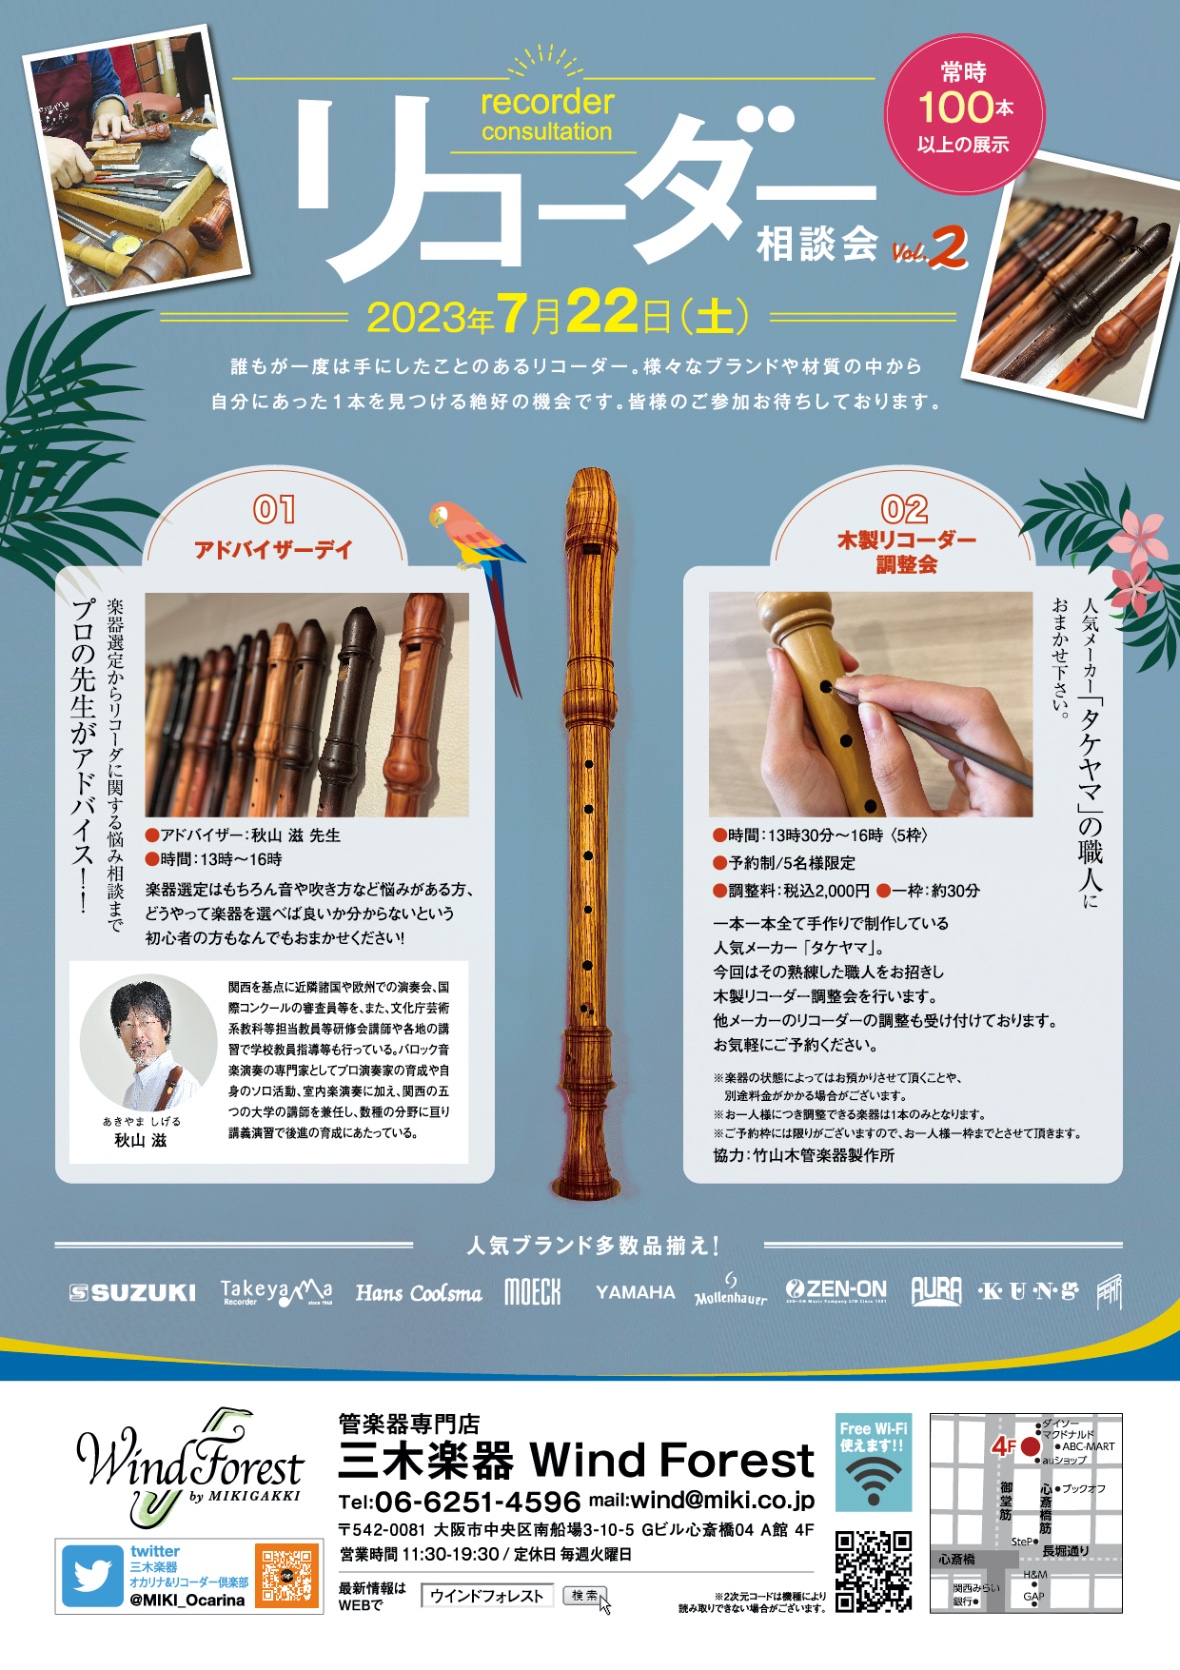 木製リコーダー相談会Vol.2 info